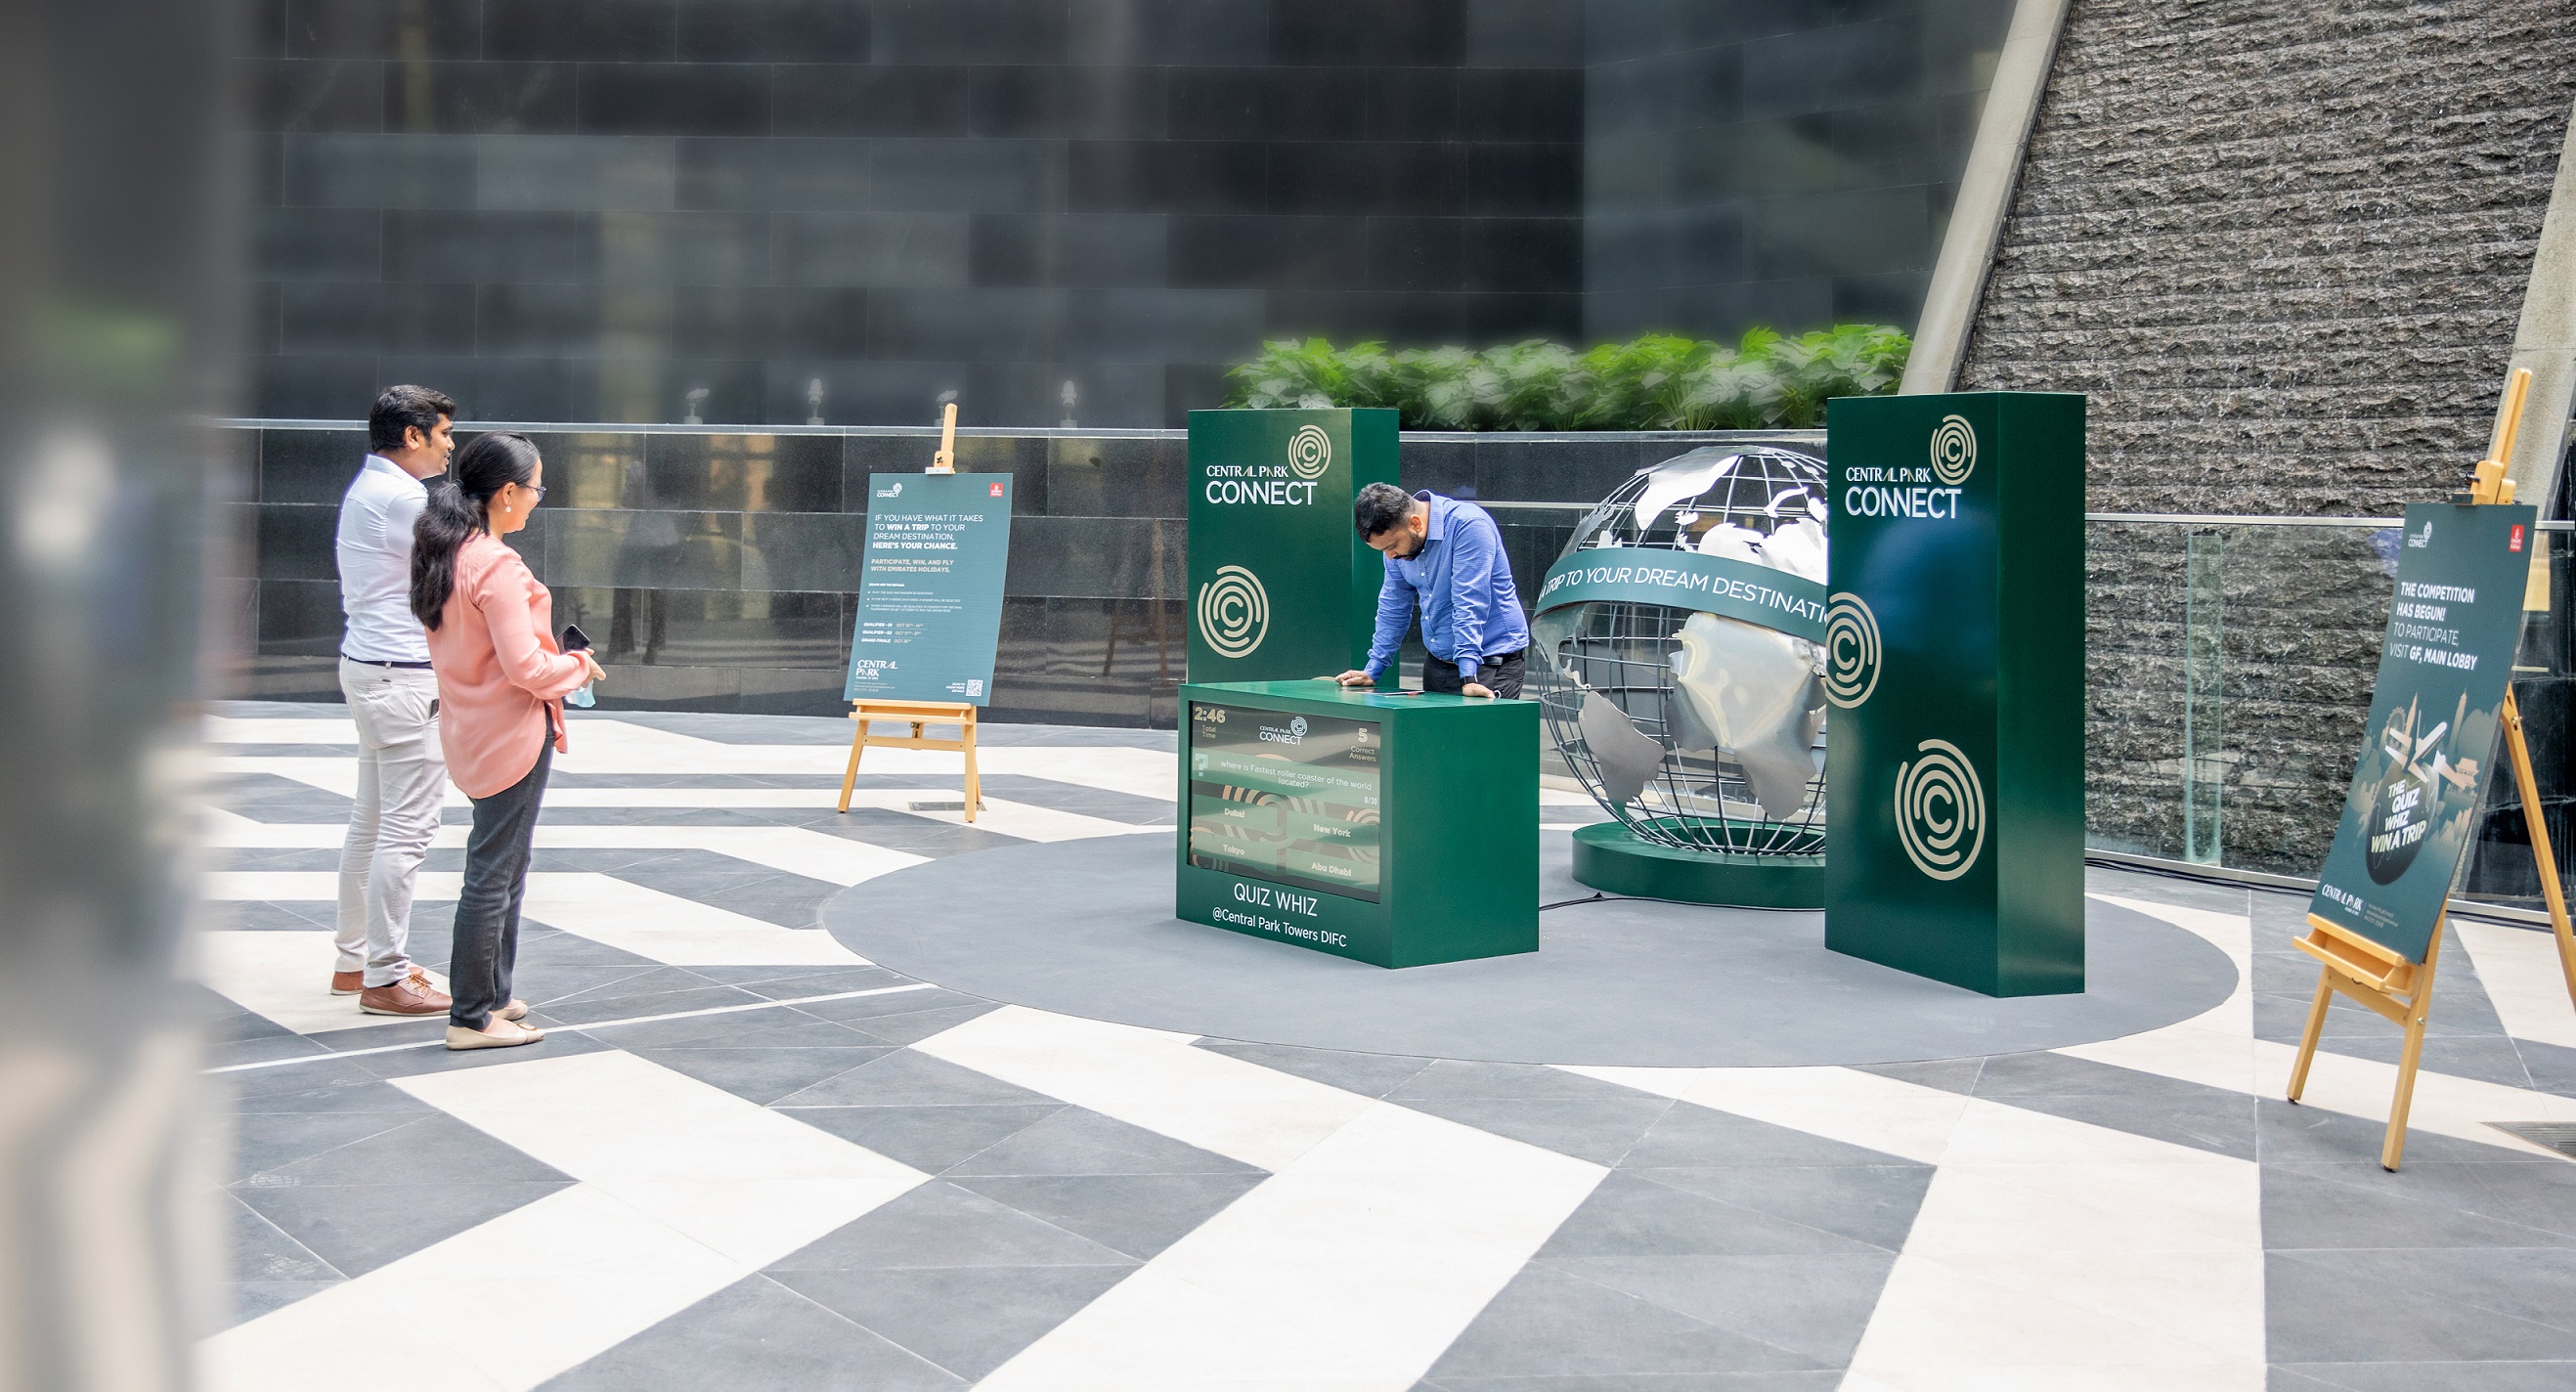 أبراج سنترال بارك تطلق مسابقة مسابقة "كويز ويز" بالتعاون مع الإمارات للعطلات